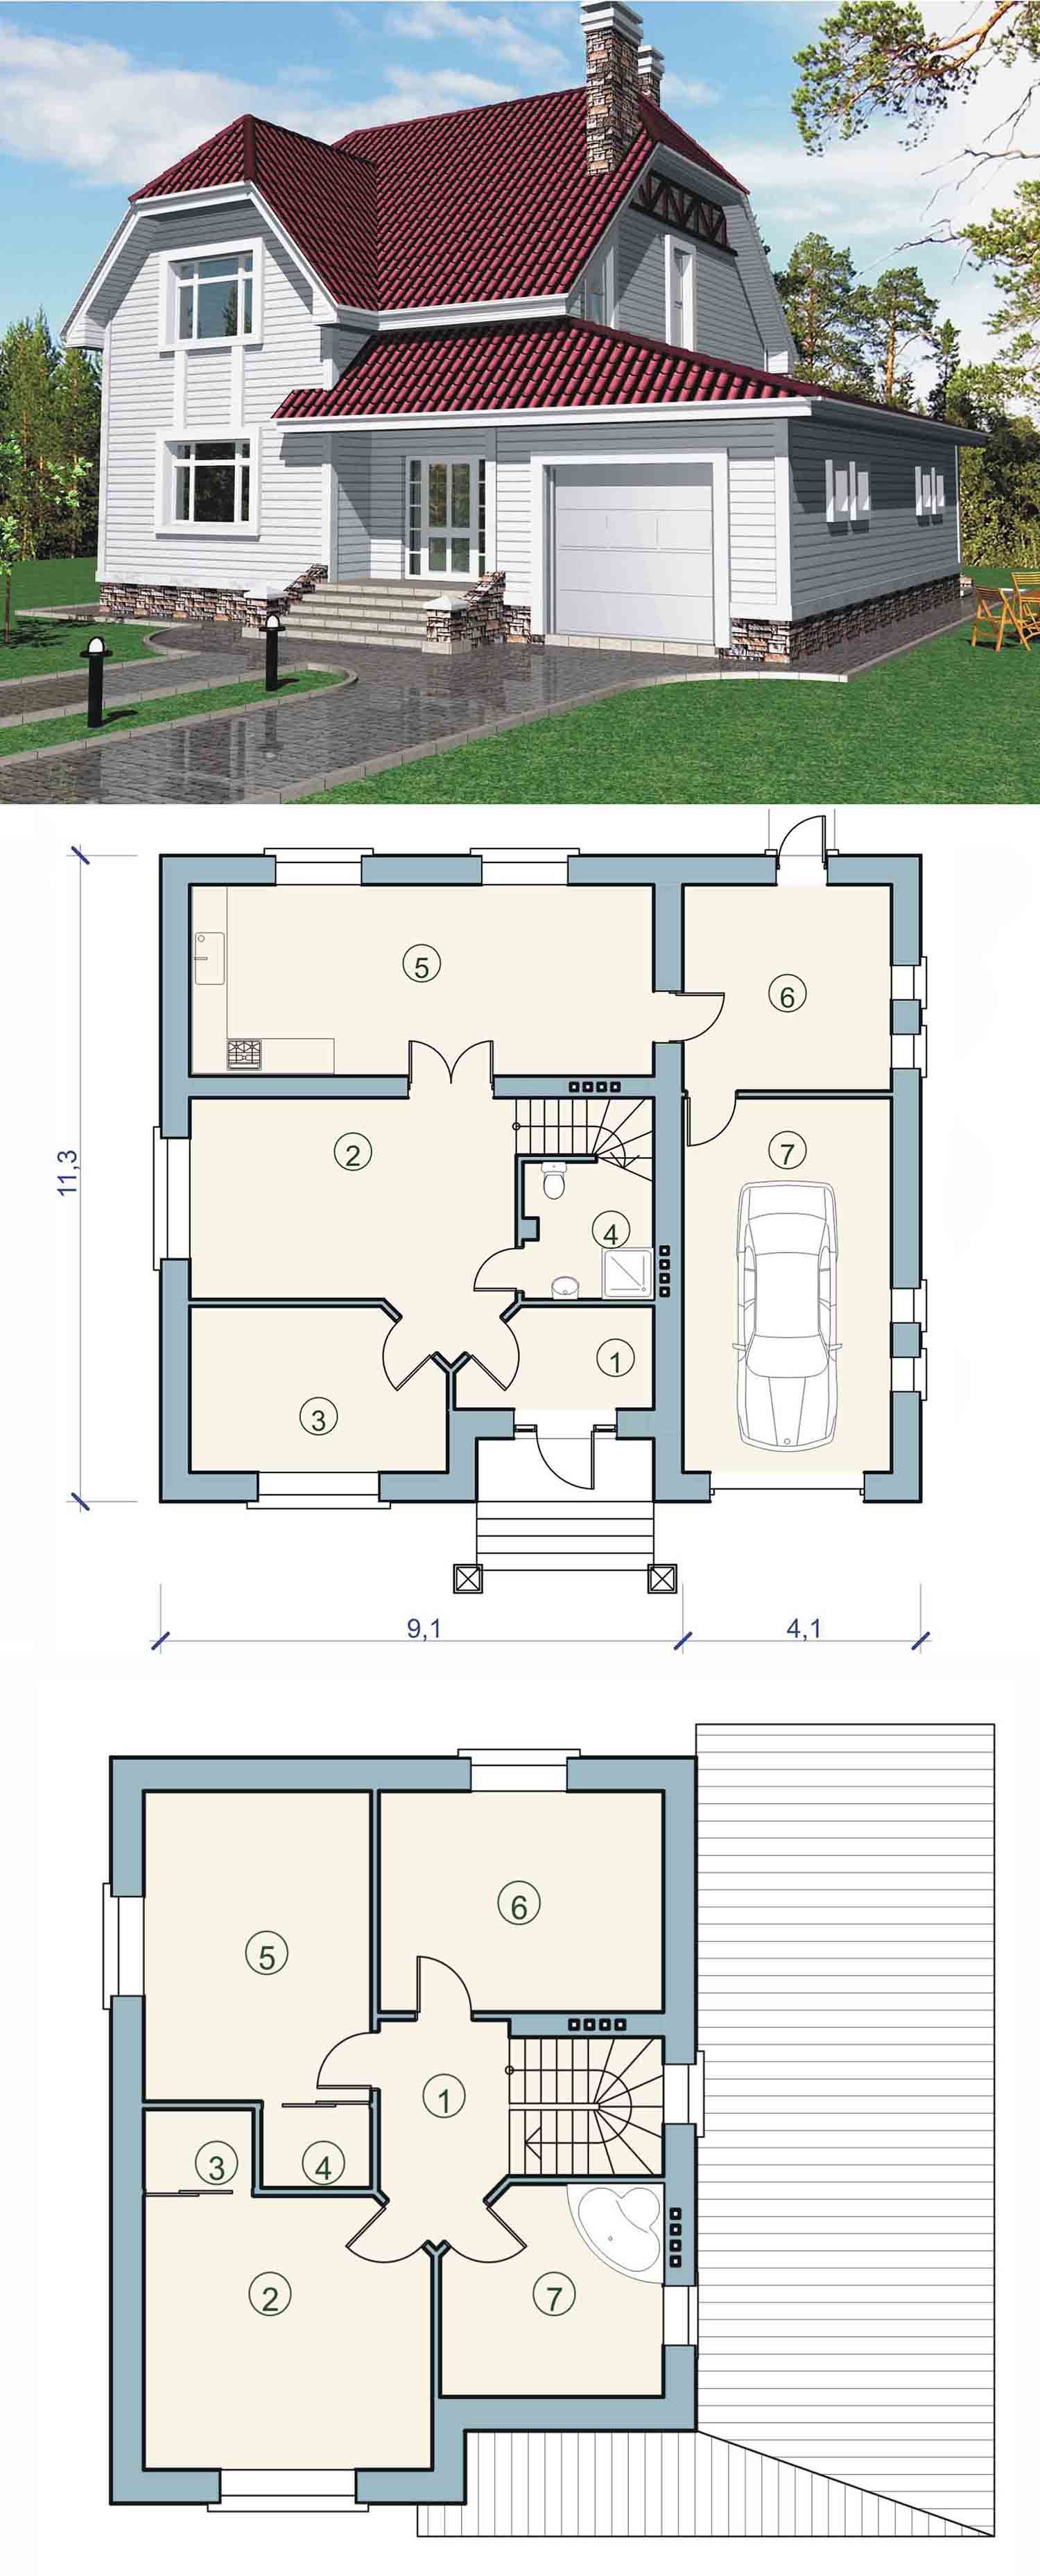 Одноэтажный проект дома с мансардой: Проекты одноэтажных домов с мансардой, планы, фото, цены. Каталог содержит планировки, планы и чертежи